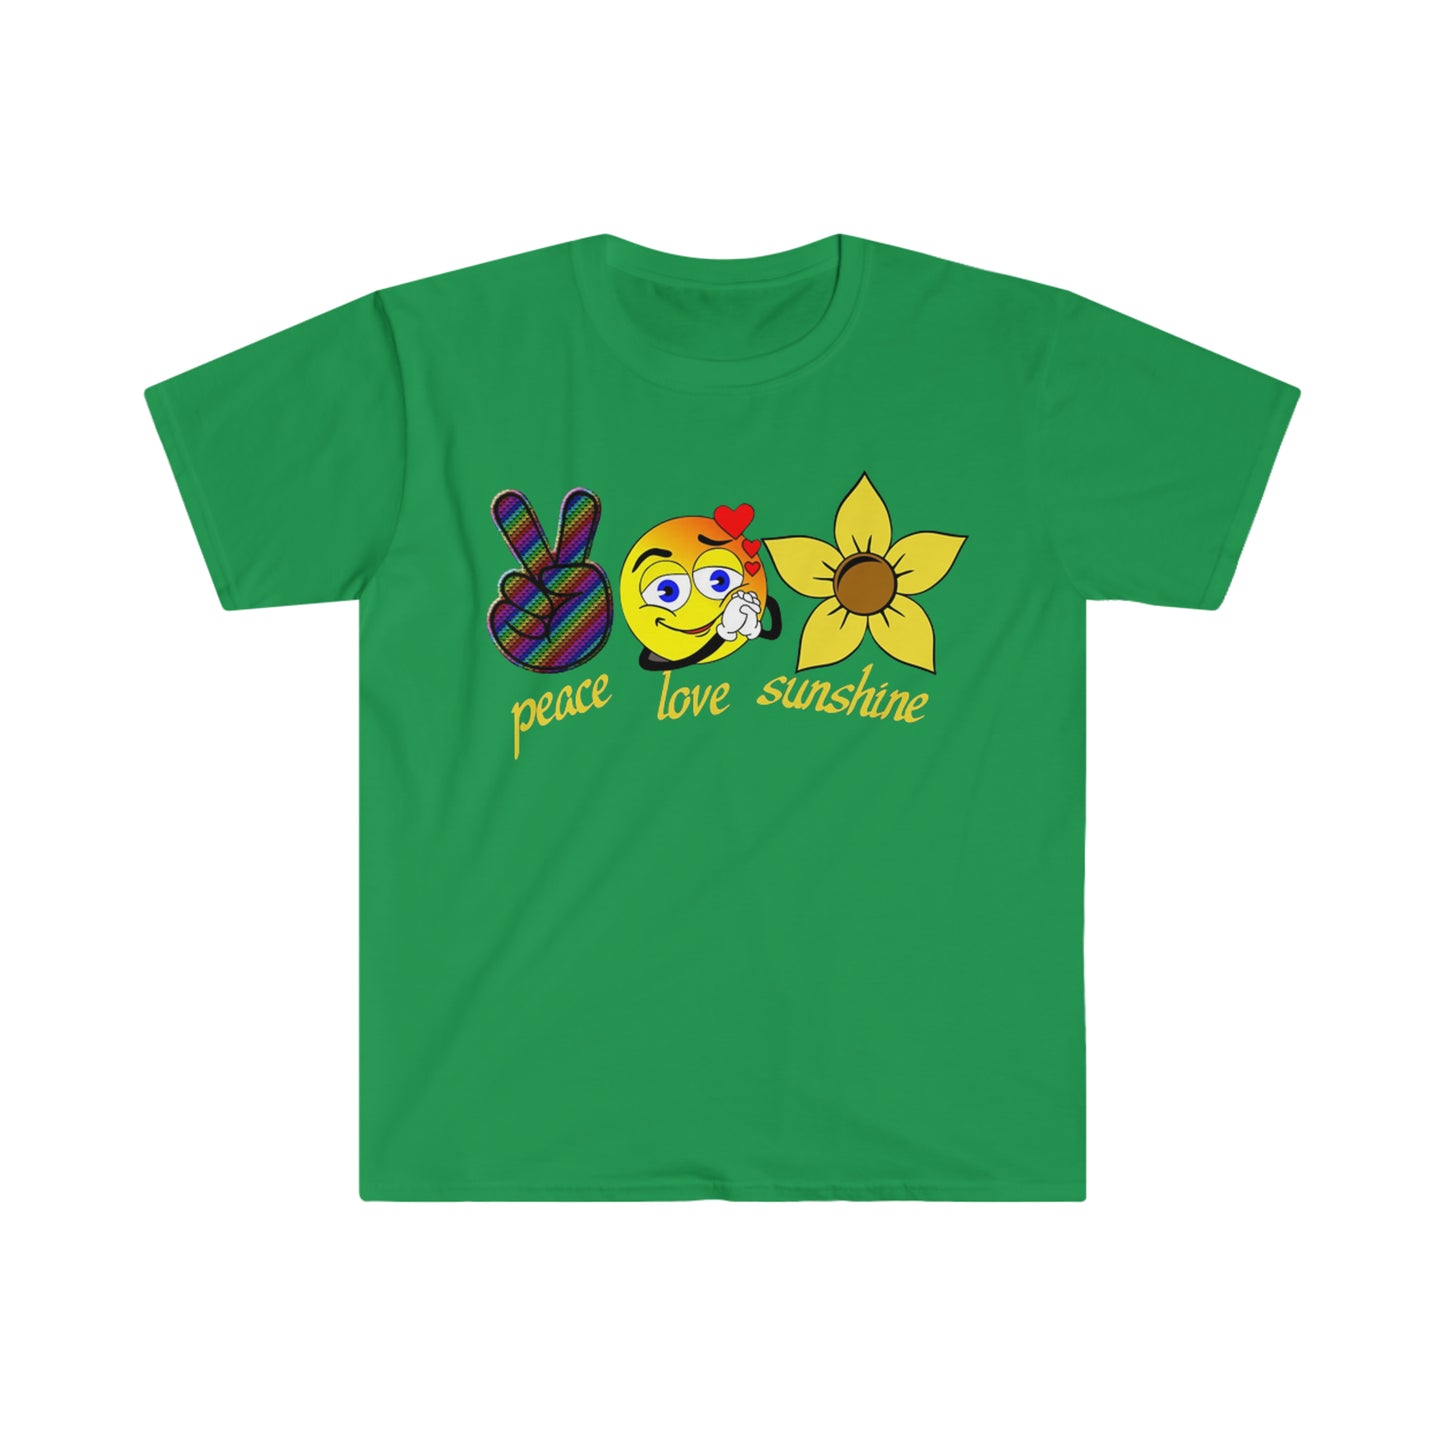 Peace Love Sunshine - Unisex Softstyle T-Shirt